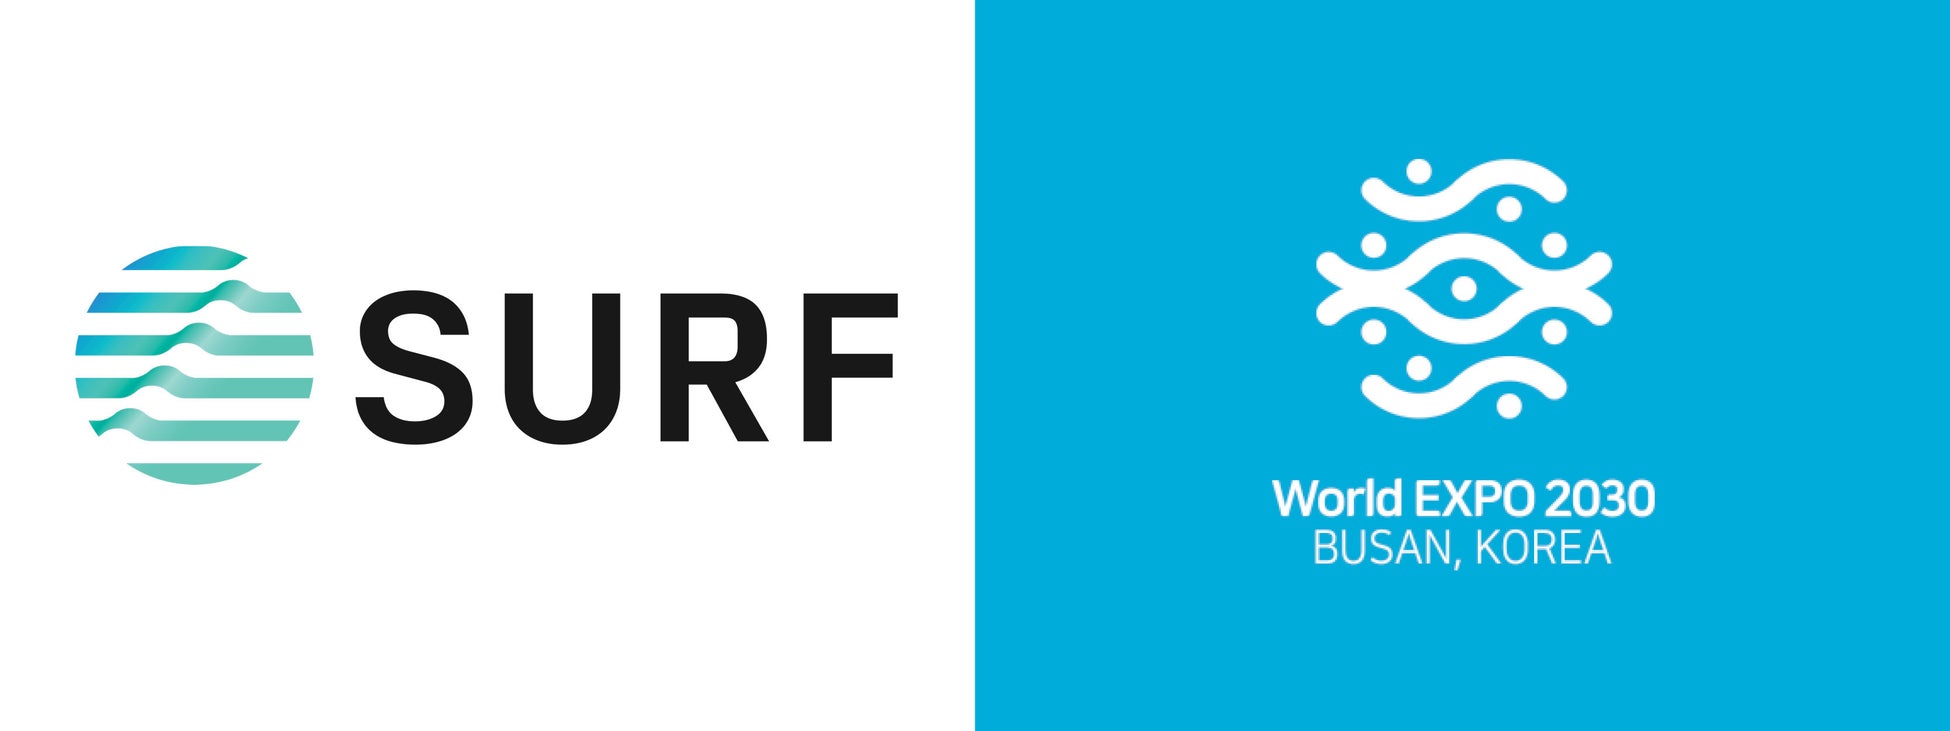 韓国・釜山 2030年万博誘致へ向けSURF Musicと提携し世界へアピール